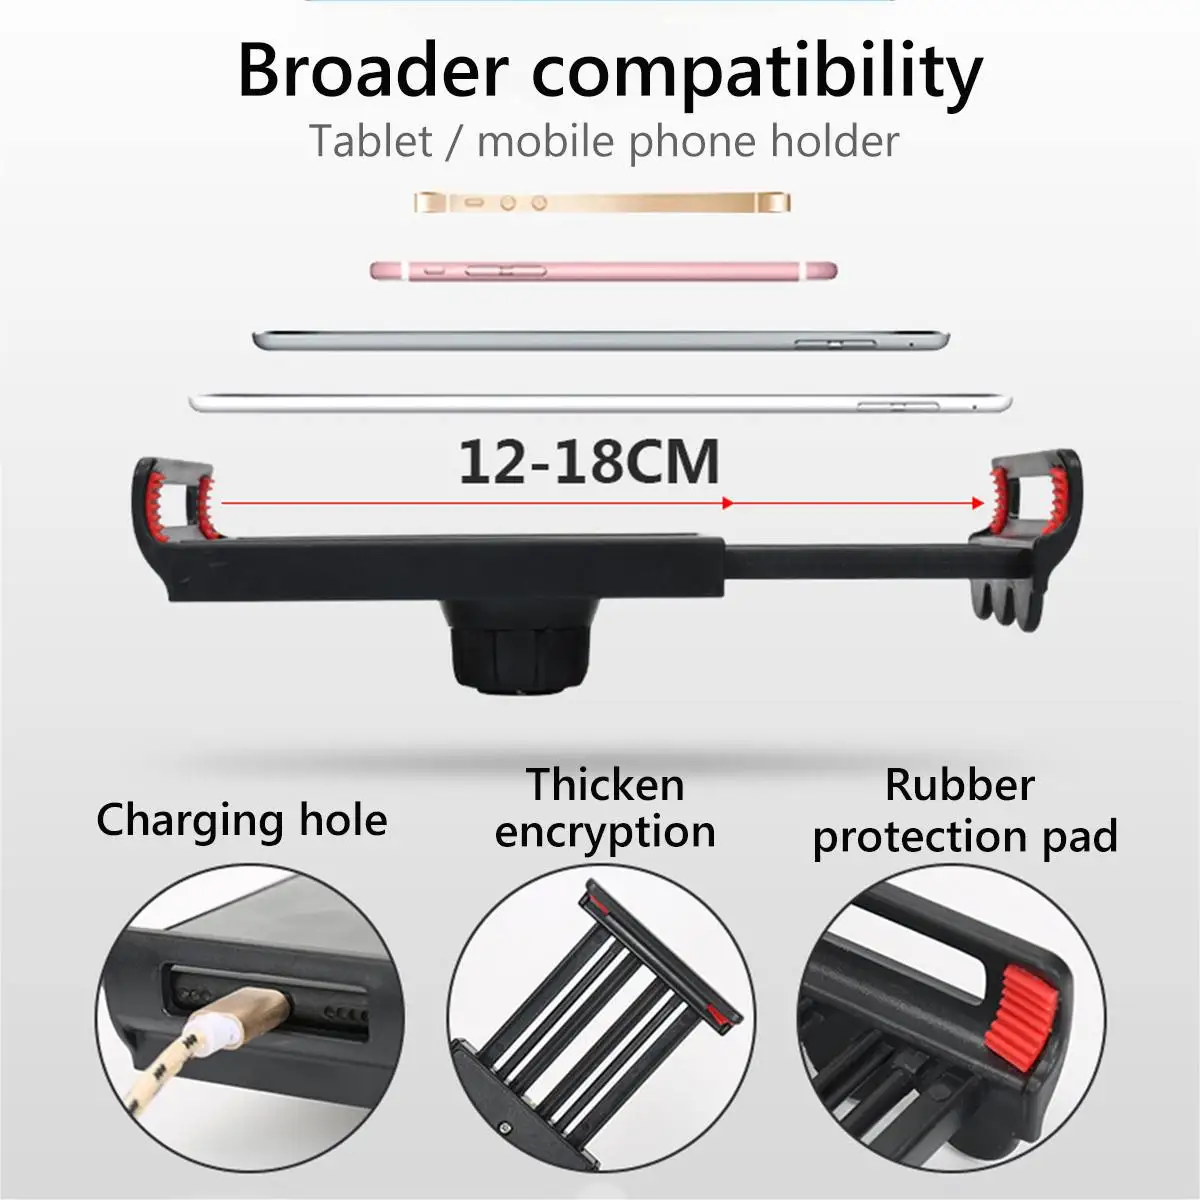 aluminumplastic 360° adjustable bed tablet stand phone holder bedside lazy bracket for tabletsphones free global shipping